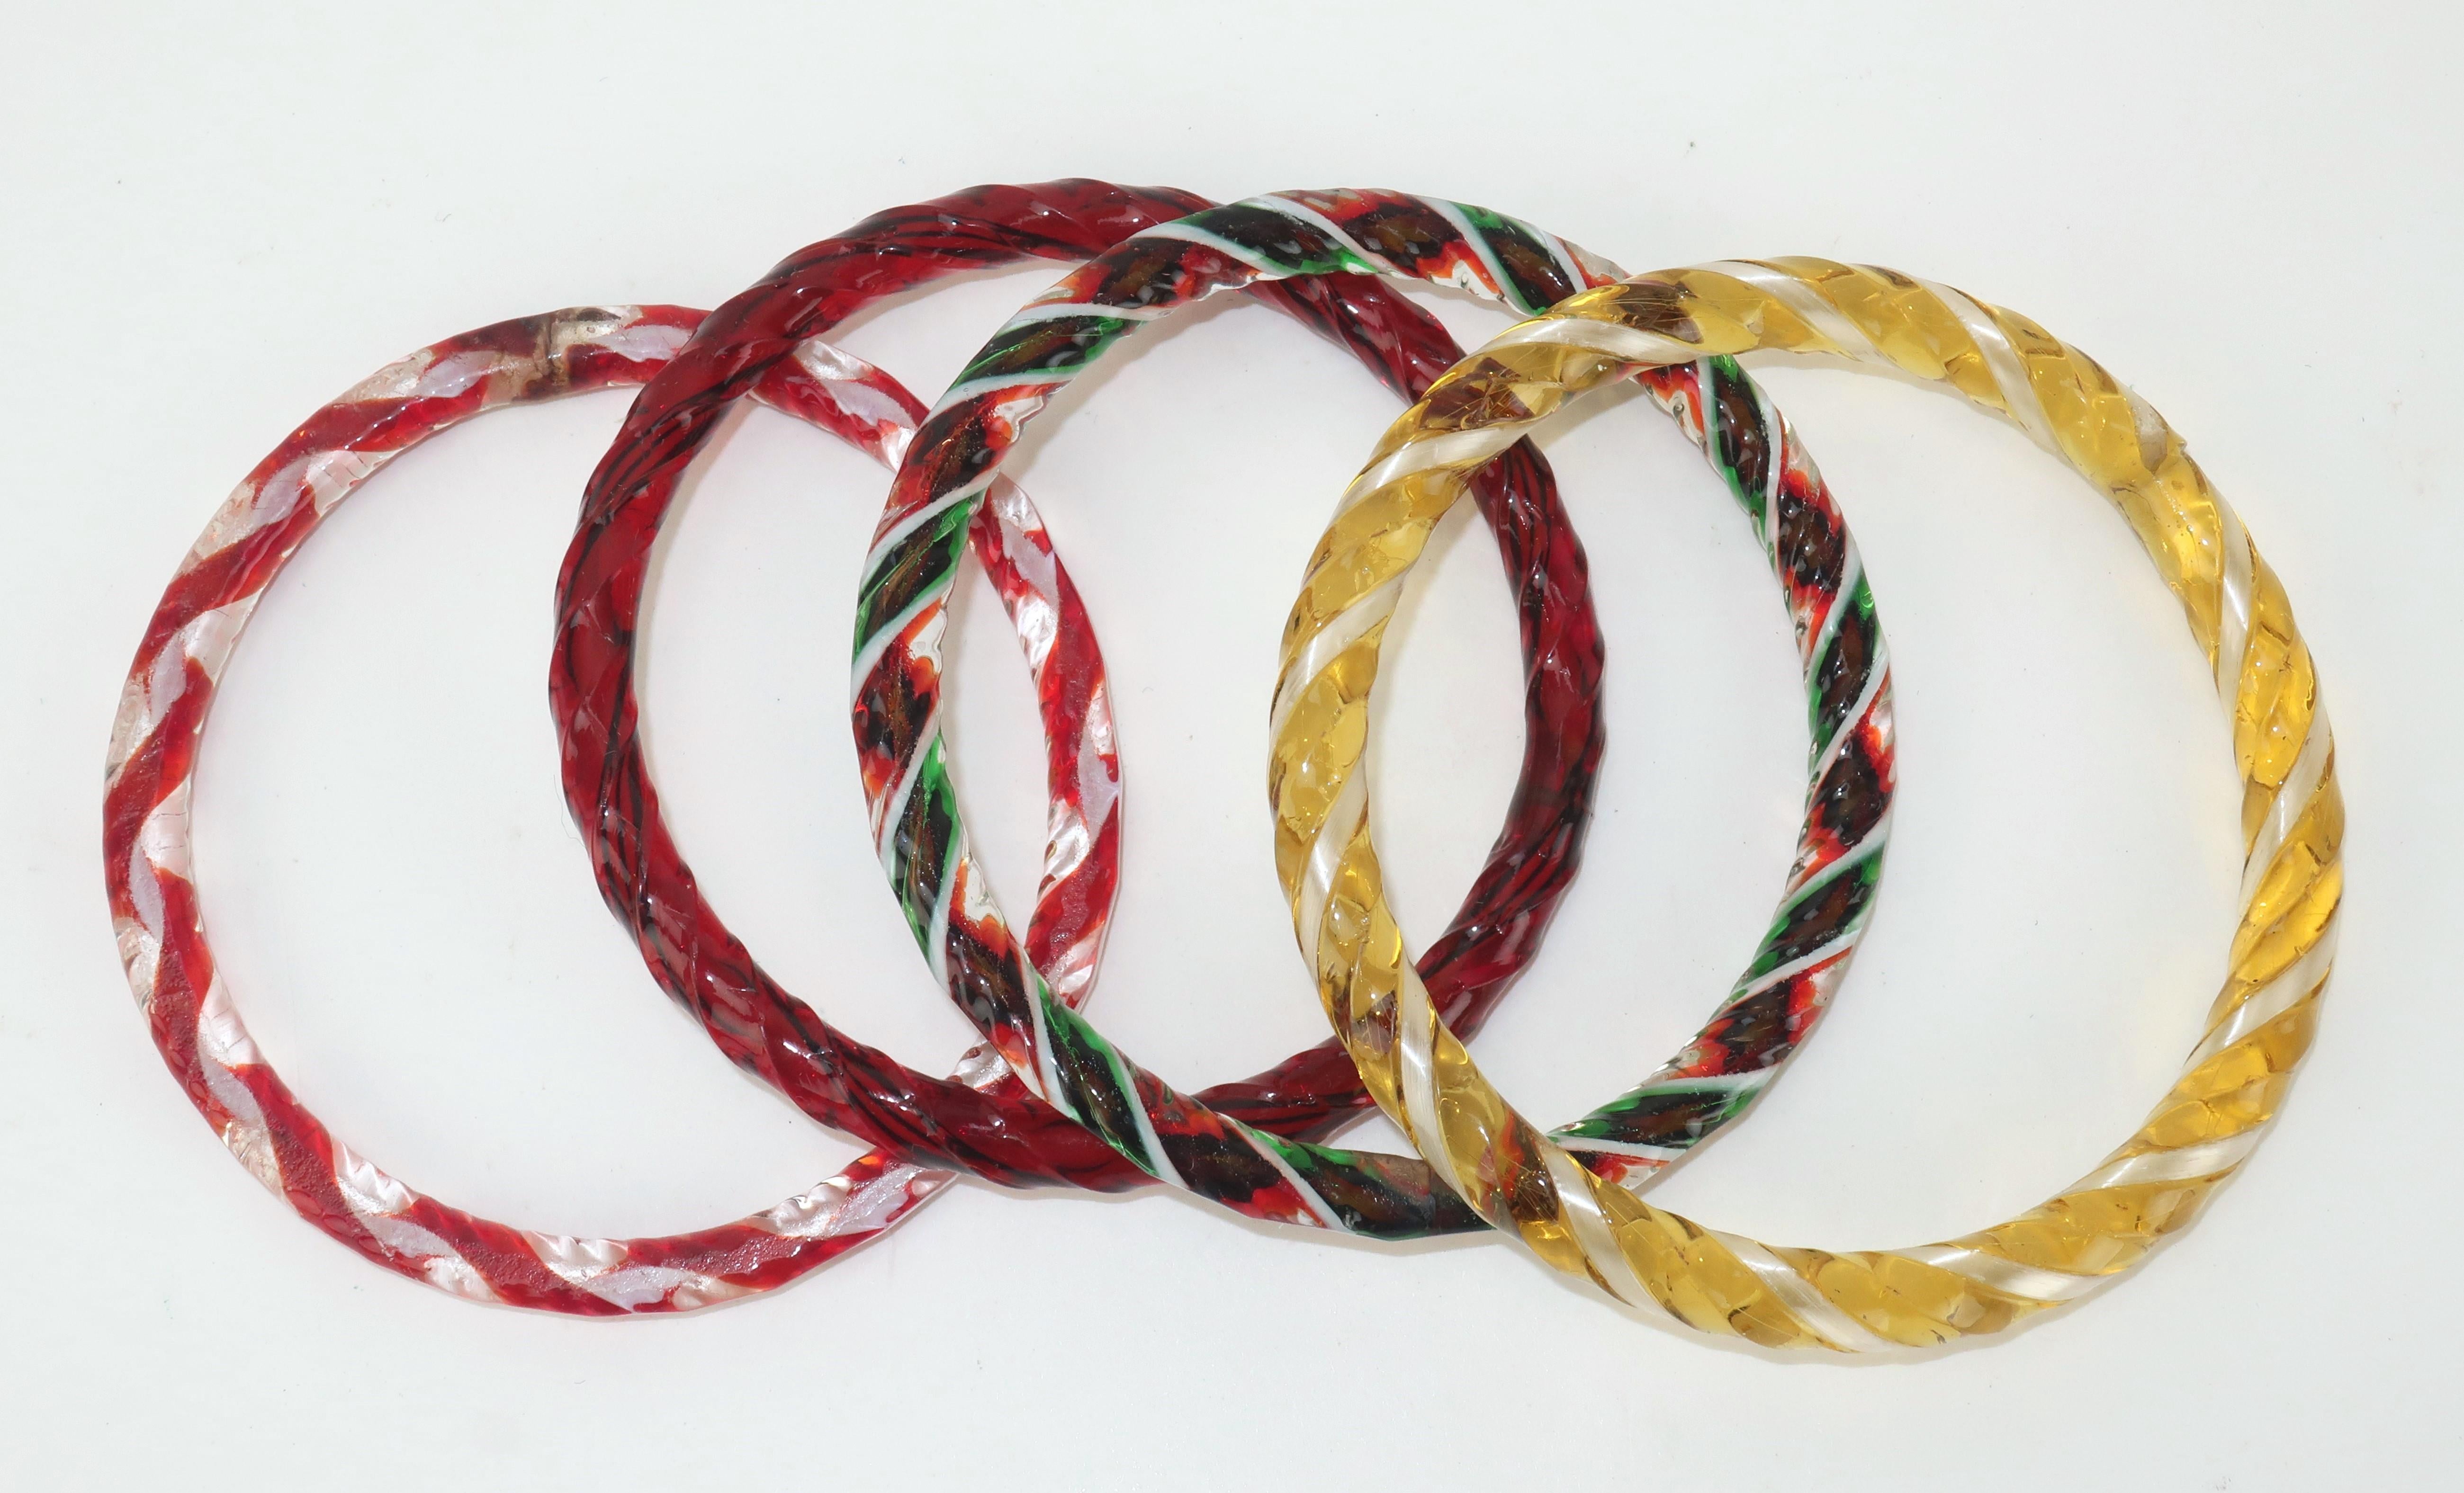 Satz von 4 Murano-Glasarmbändern im Vintage-Stil in Zuckerstangenfarben, darunter rot, gelb, grün und weiß.  Jedes Armband hat eine gedrehte Oberfläche und ein durchscheinendes Aussehen.  Wenn sie zusammen getragen werden, erzeugen sie einen